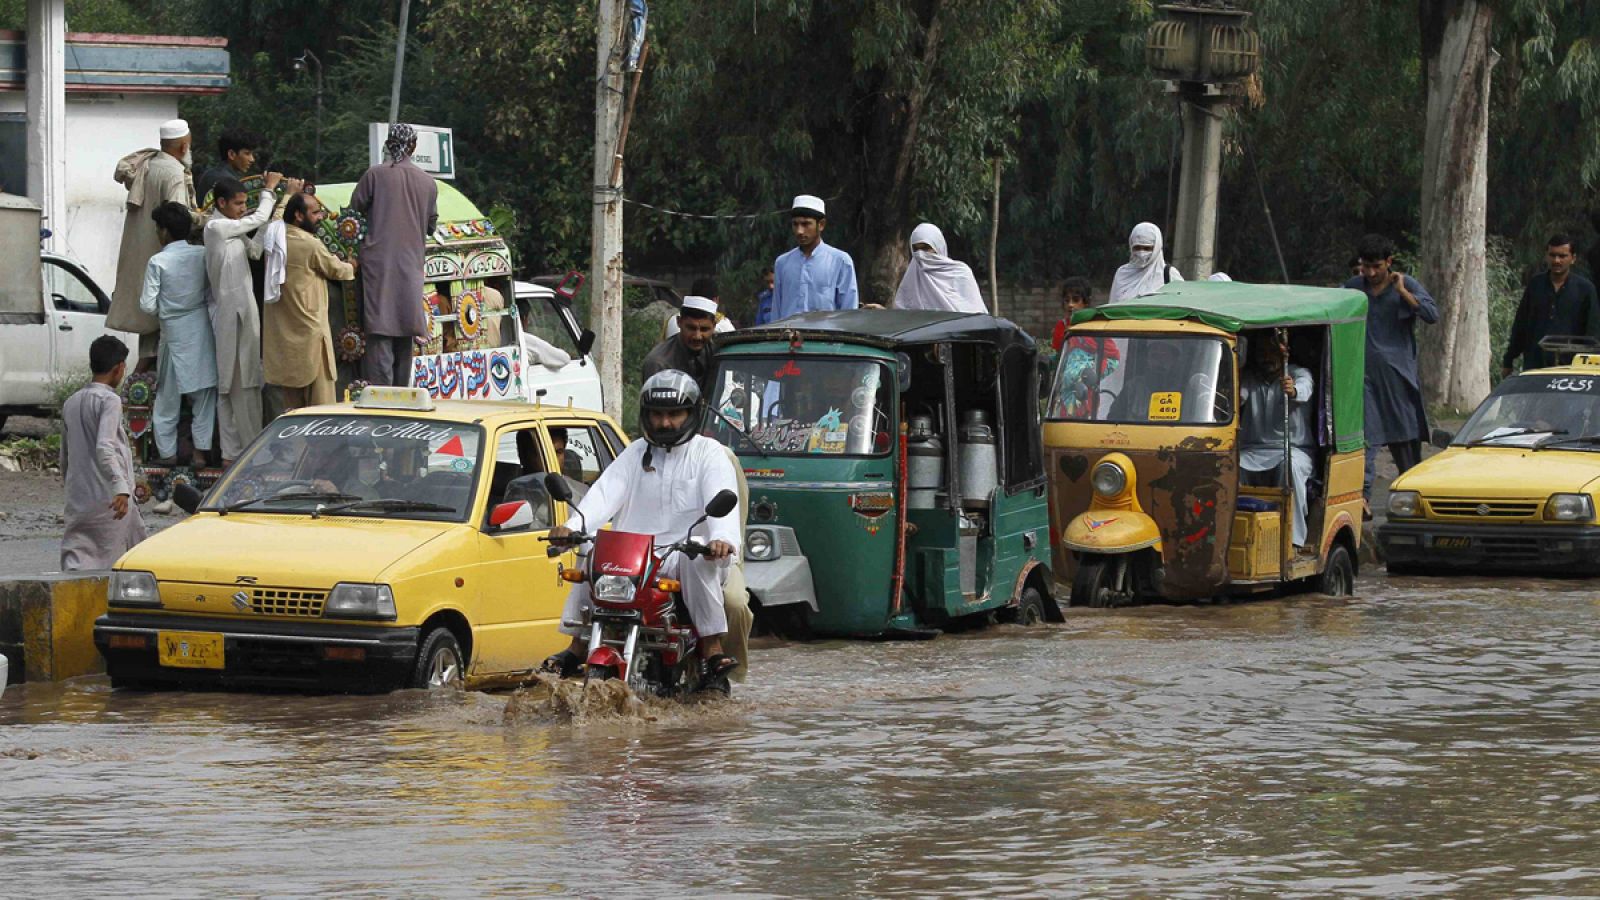 Vehículos circulan por una calle inundada en Peshawar, Pakistán